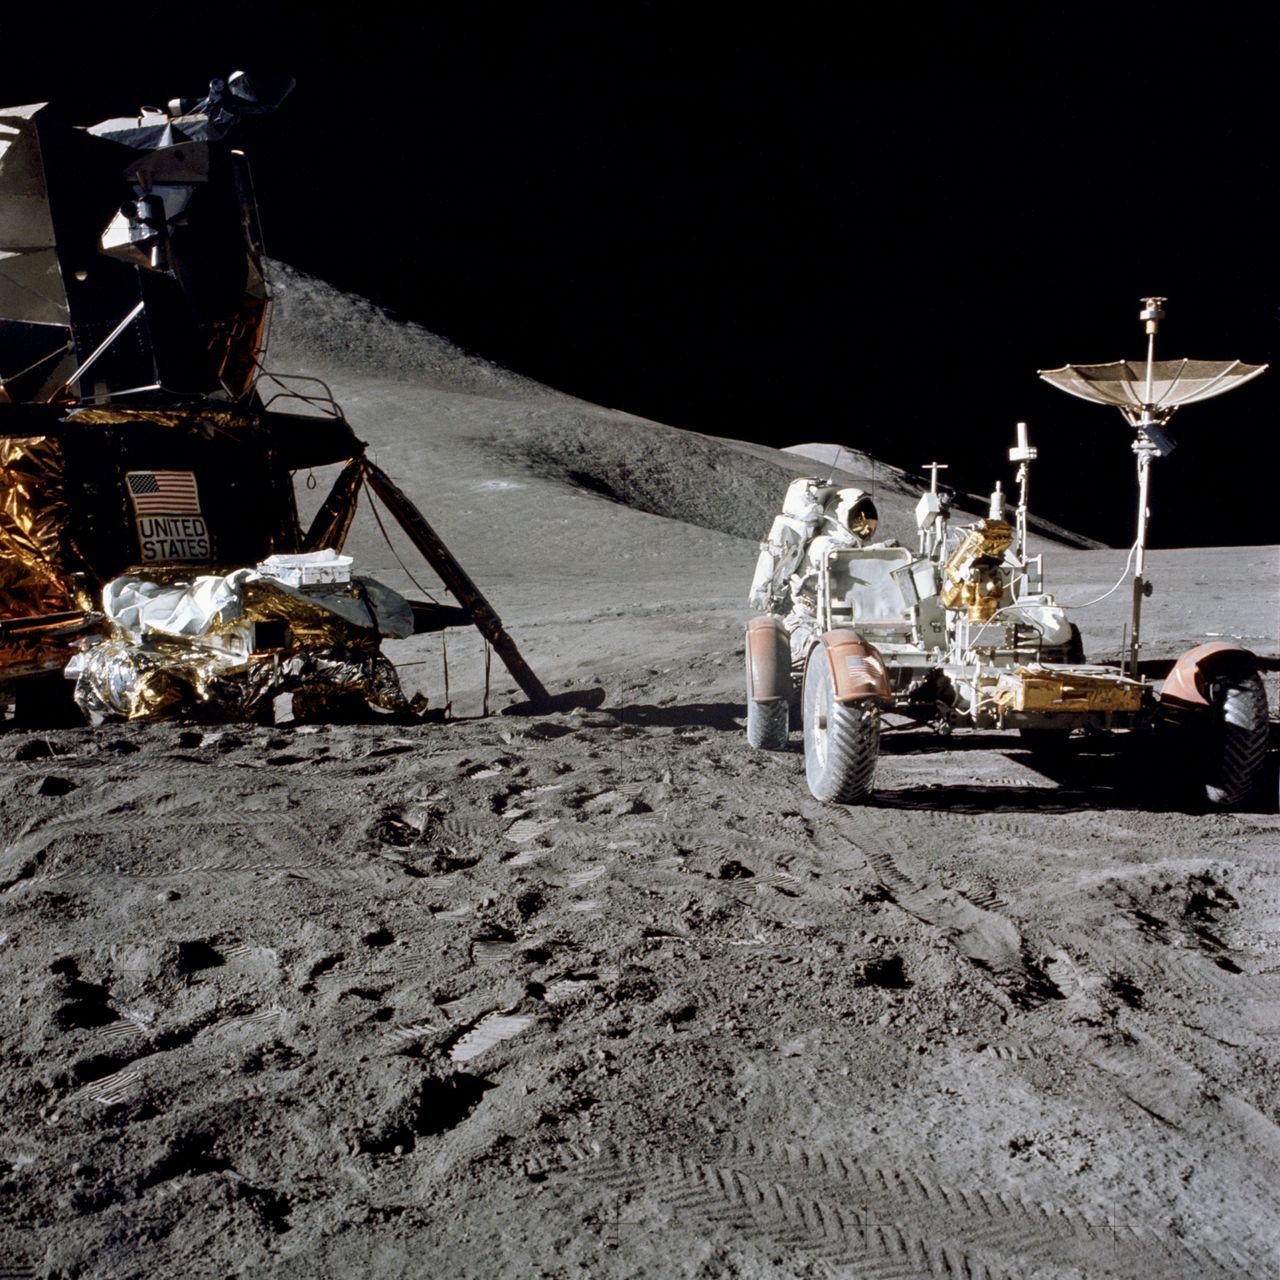 31 lipca 1971 (Apollo 15) - astronauta James Irwin pracuje przy LRV w trakcie pierwszego wyjścia na powierzchnię Księżyca.